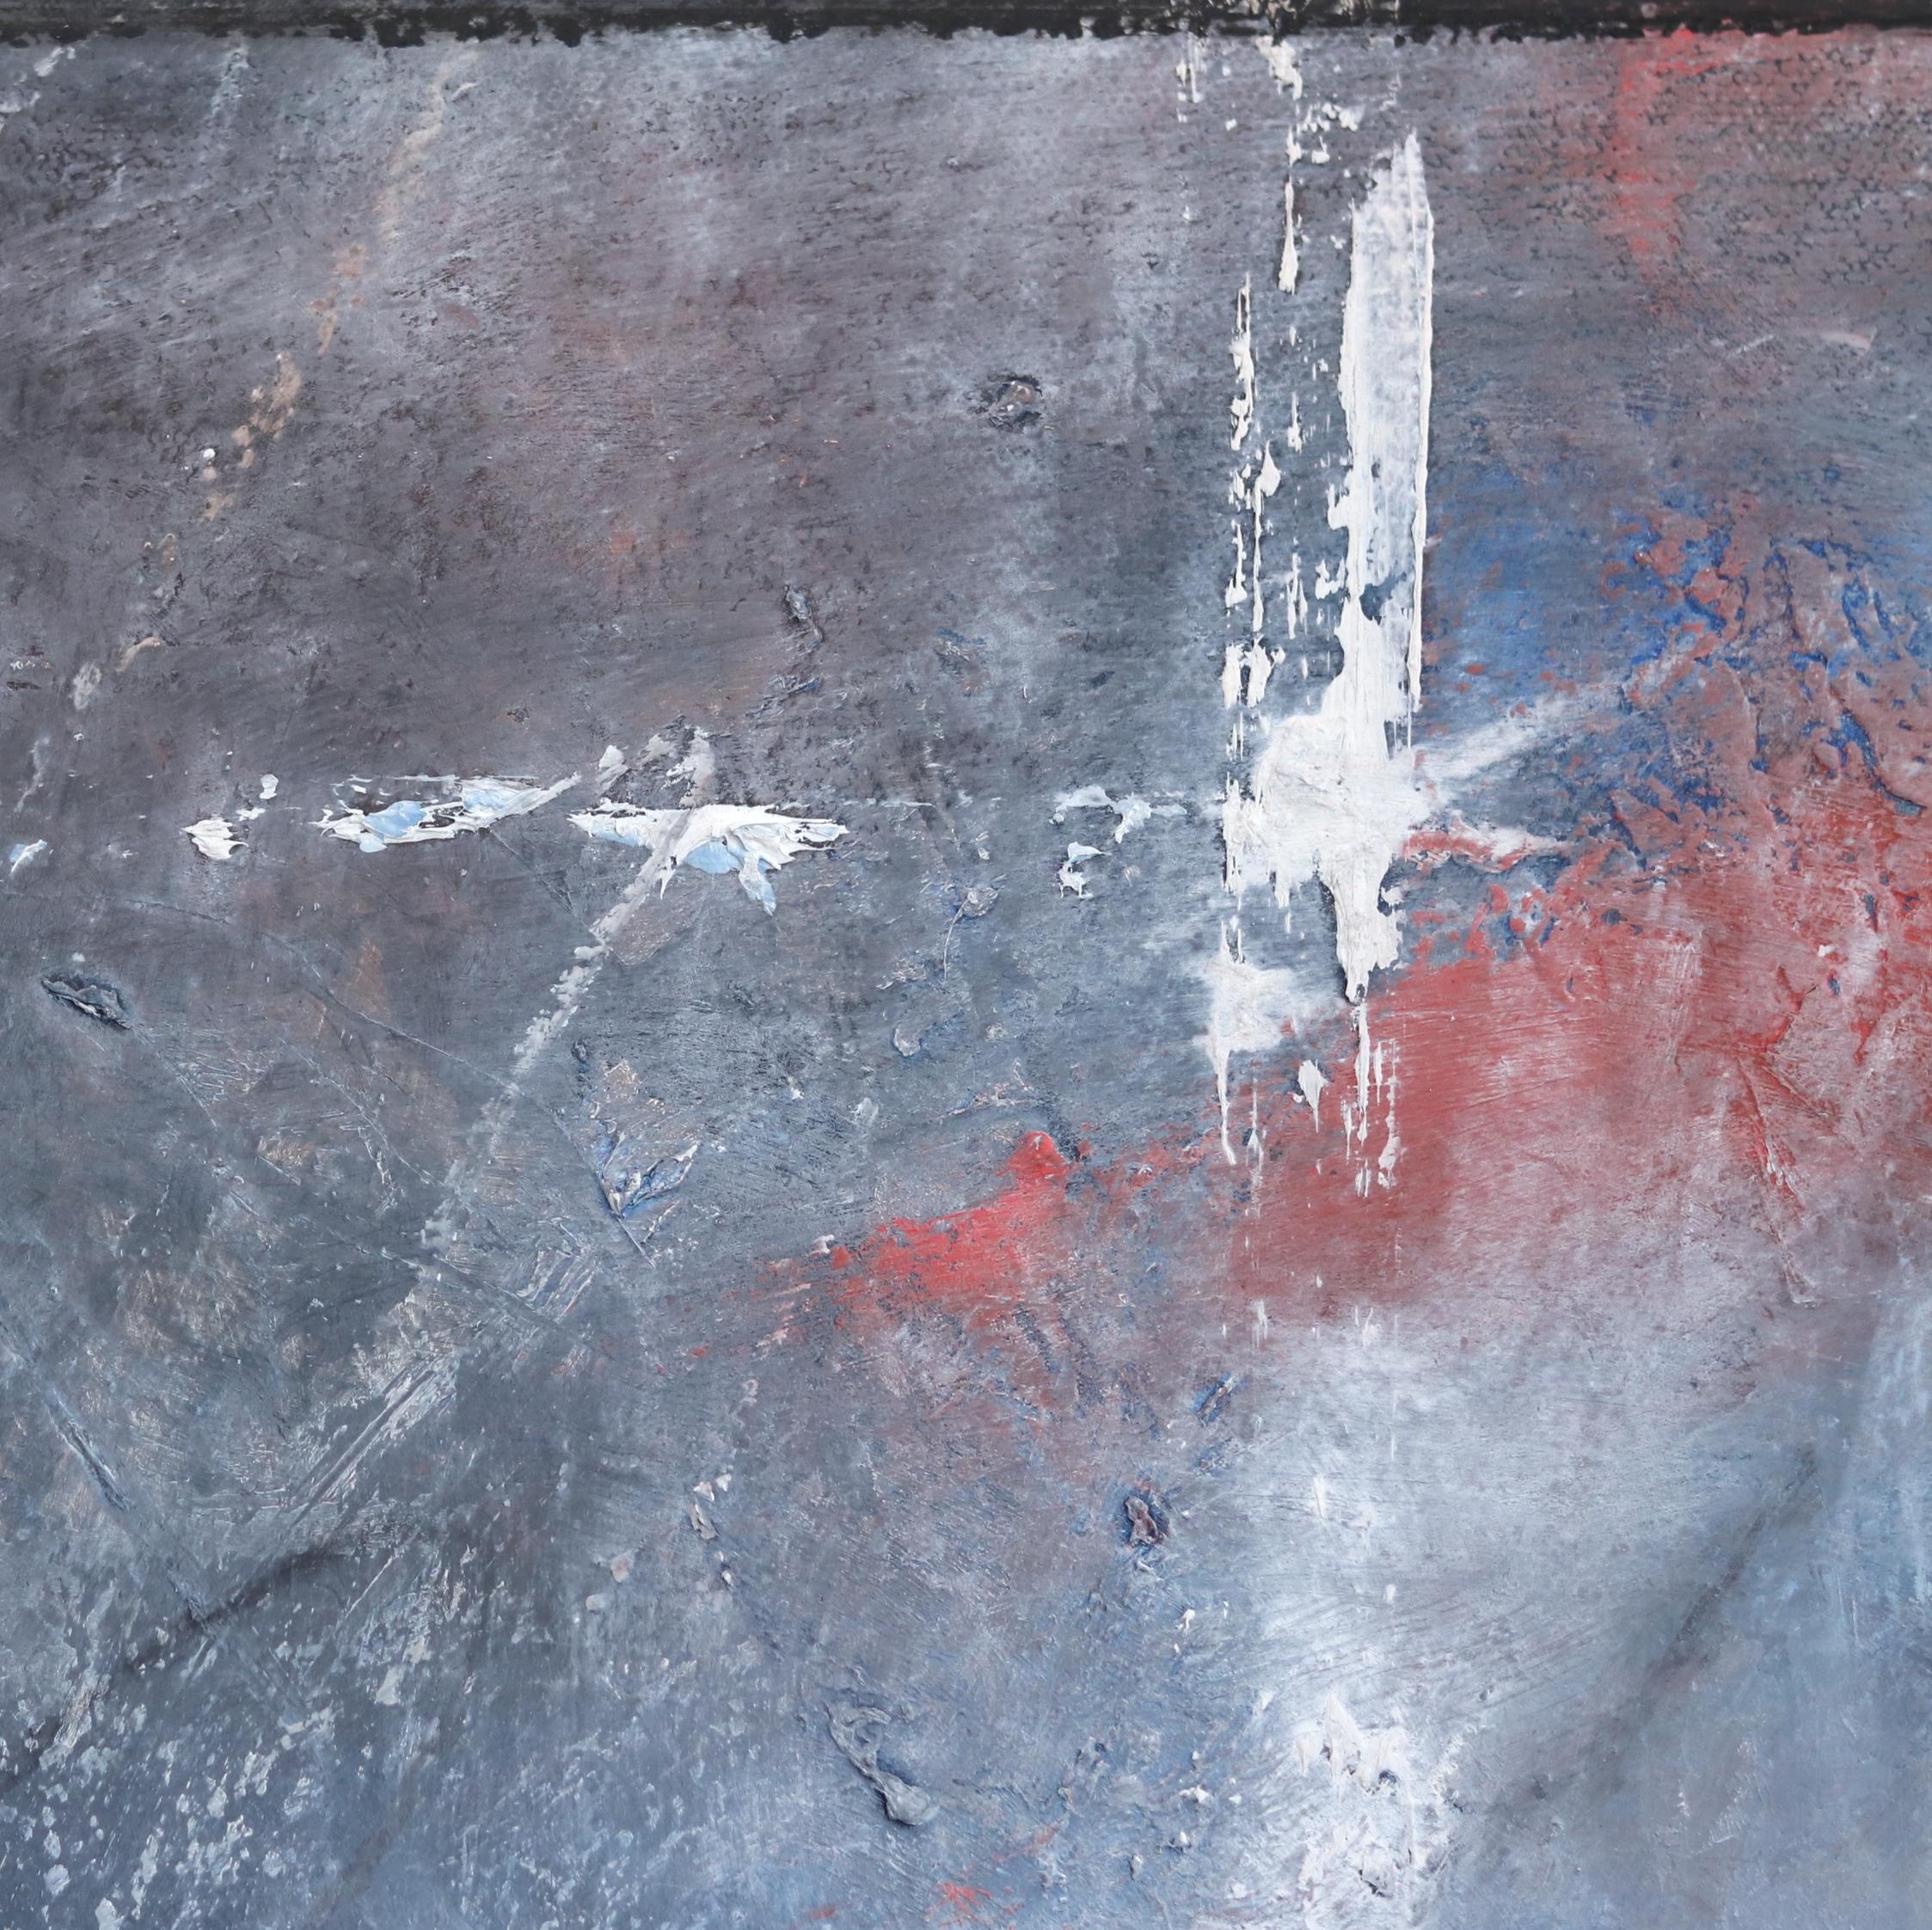 Mark Acetellis Öl- und Mischtechnik-Gemälde wecken den Entdecker- und Abenteuersinn des Betrachters; sie verlangen nach einer neuen Entdeckung. Seine Werke weisen eine Chemie von Komplexität und Spontaneität auf, eine lyrische Abstraktion von